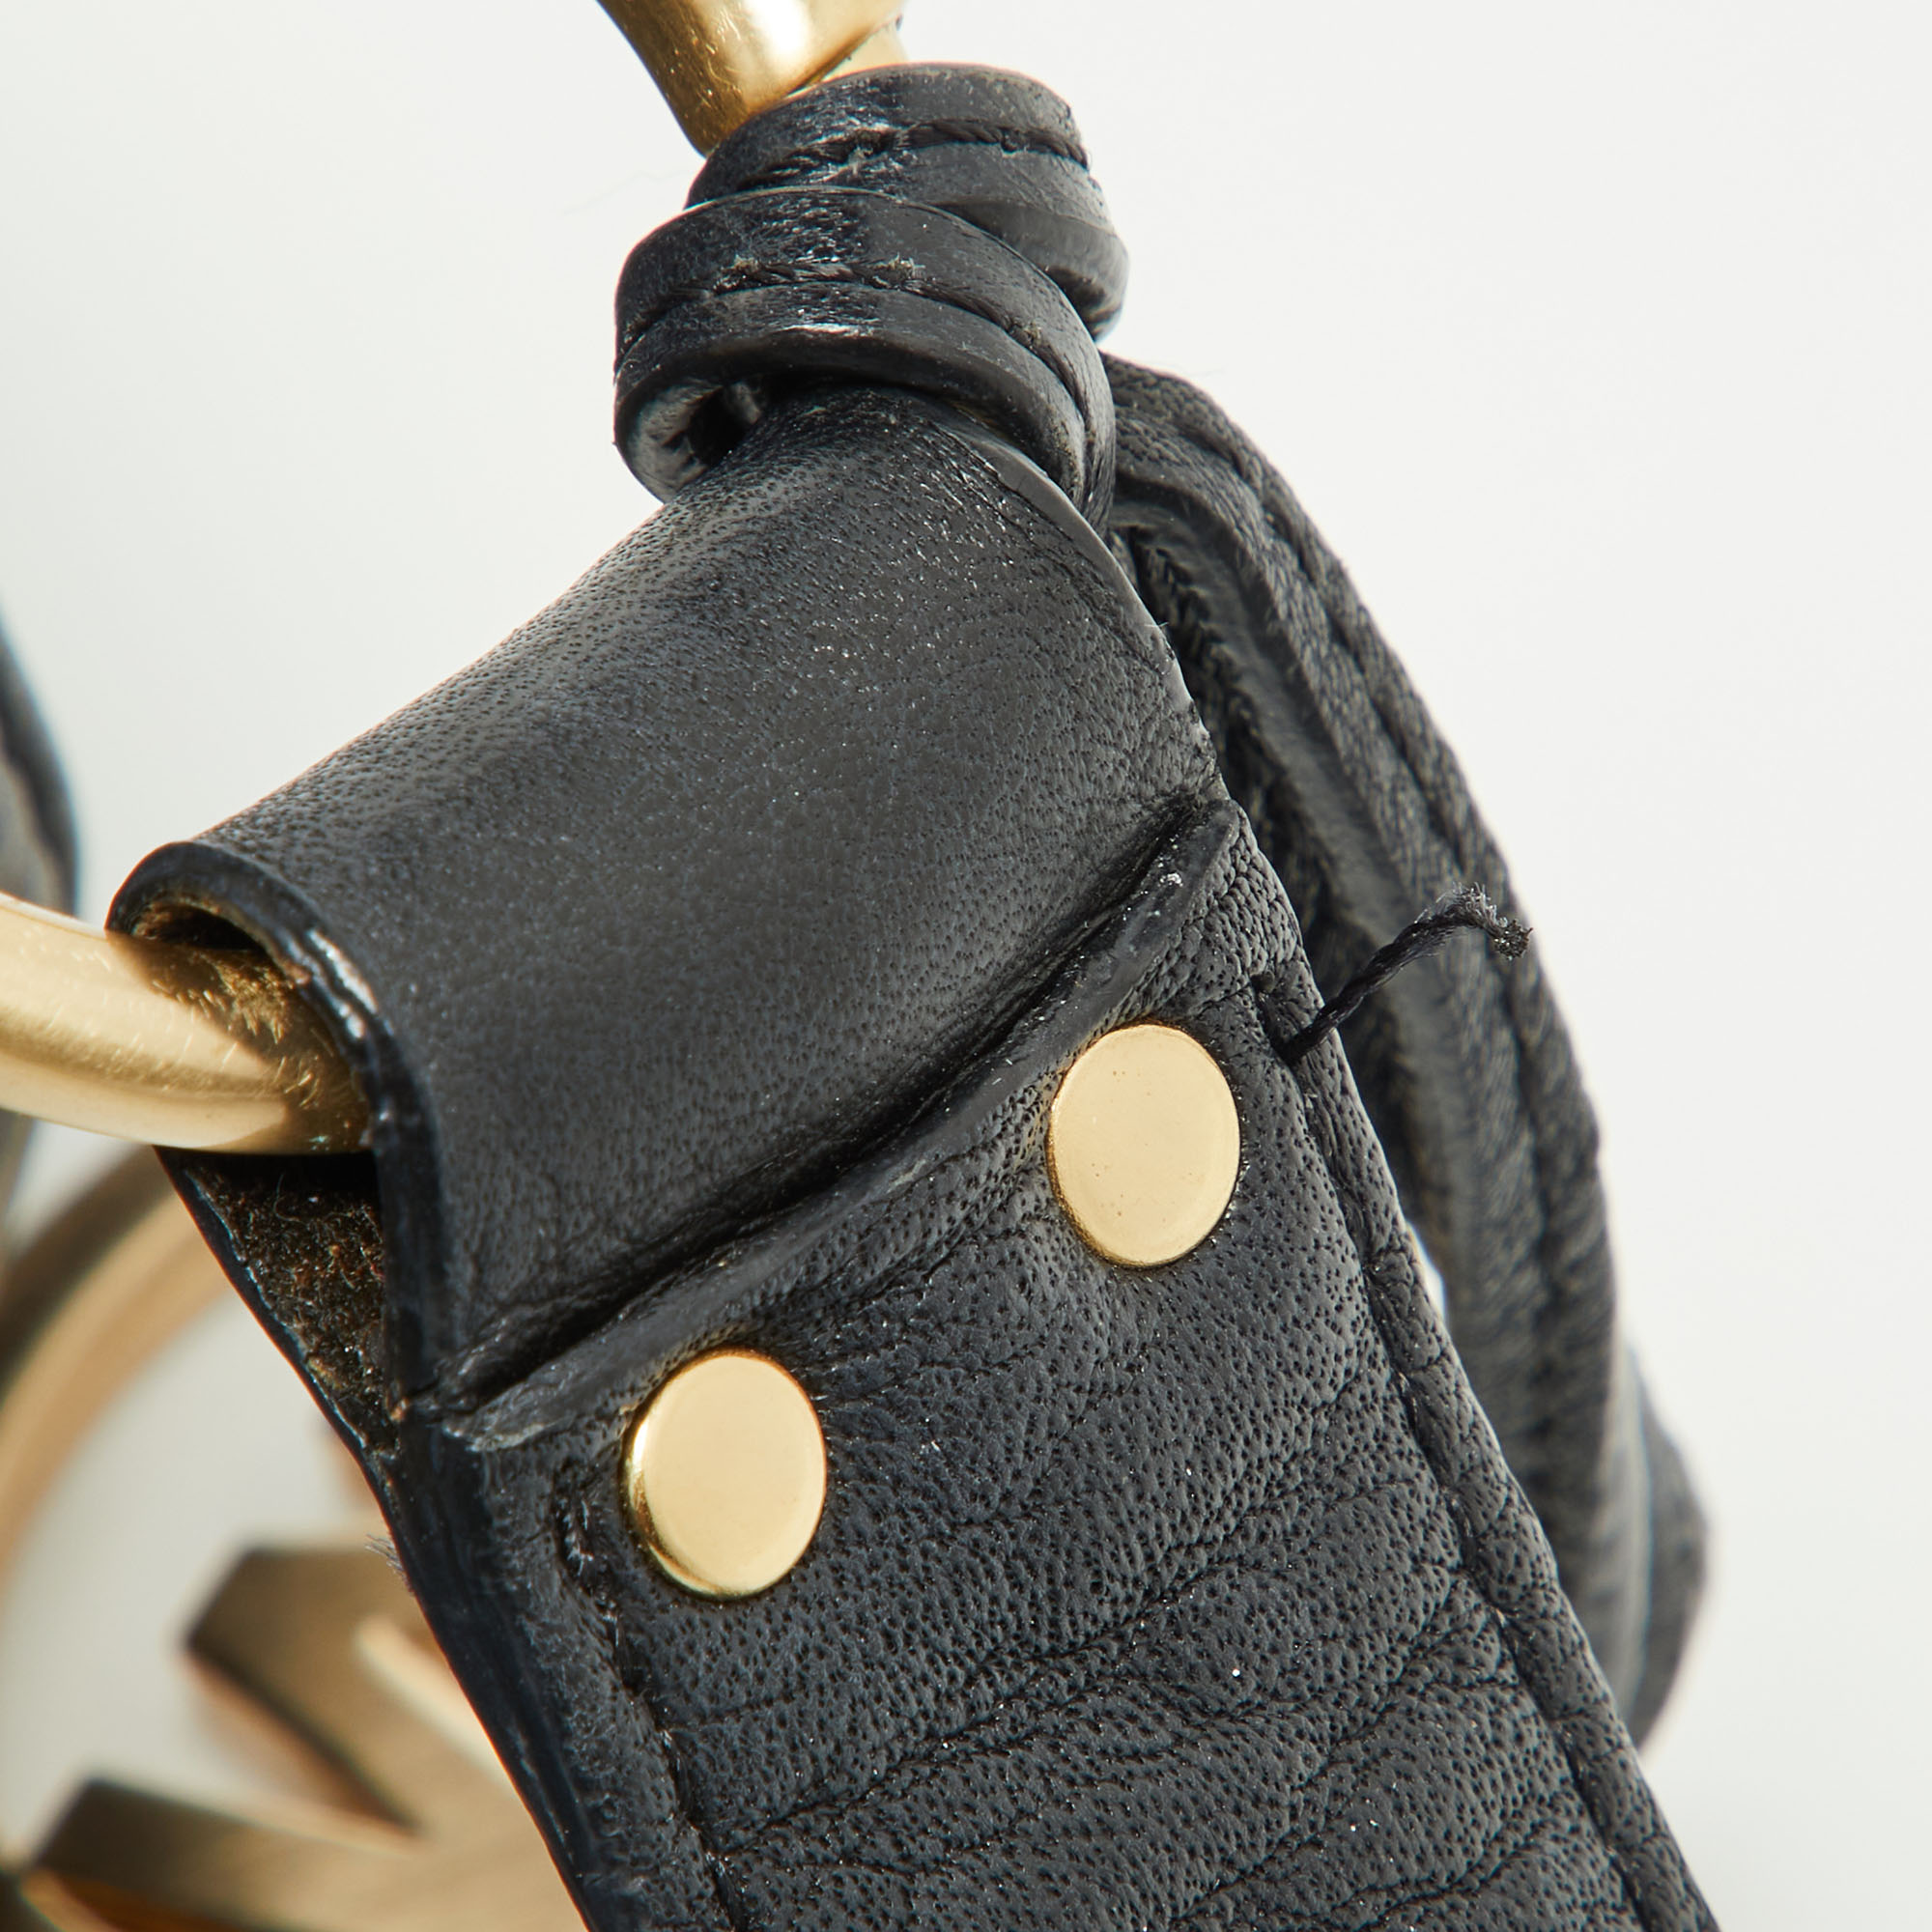 MICHAEL Michael Kors Black Leather Drawstring Shoulder Bag